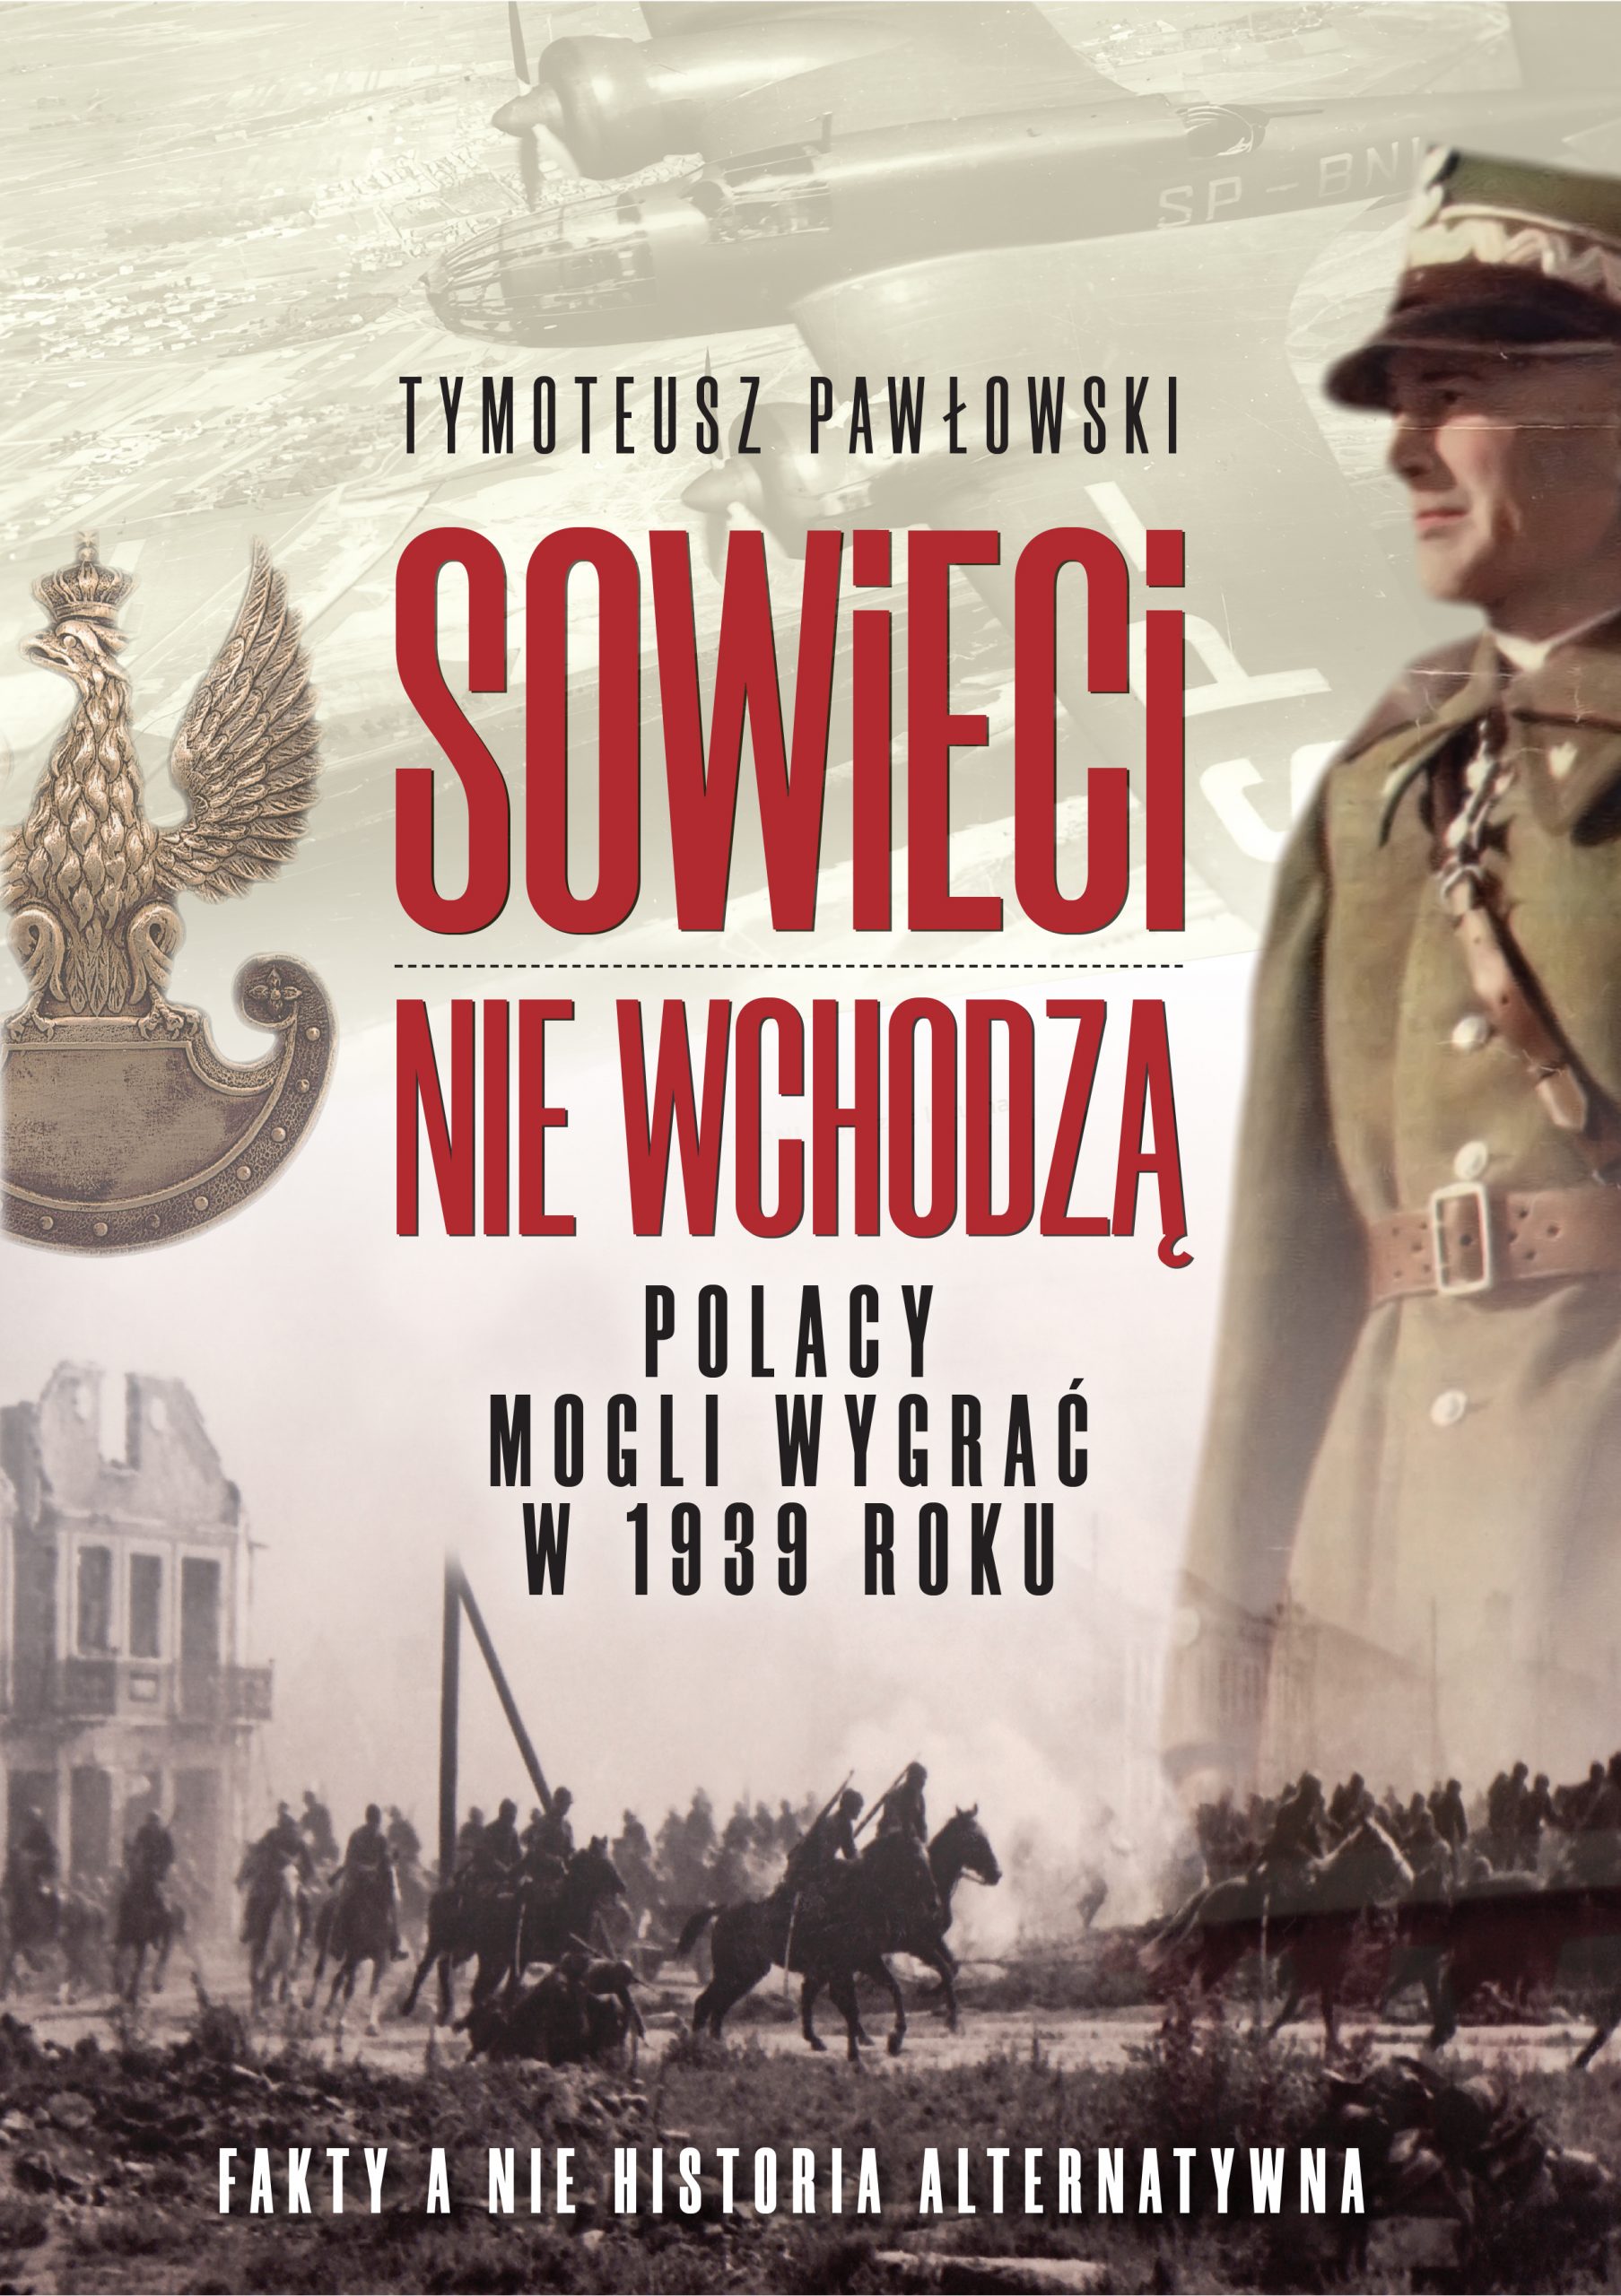 „Sowieci nie wchodzą…” T. Pawłowskiego, czyli jak tworzy się historię alternatywną udając, że się tego nie robi